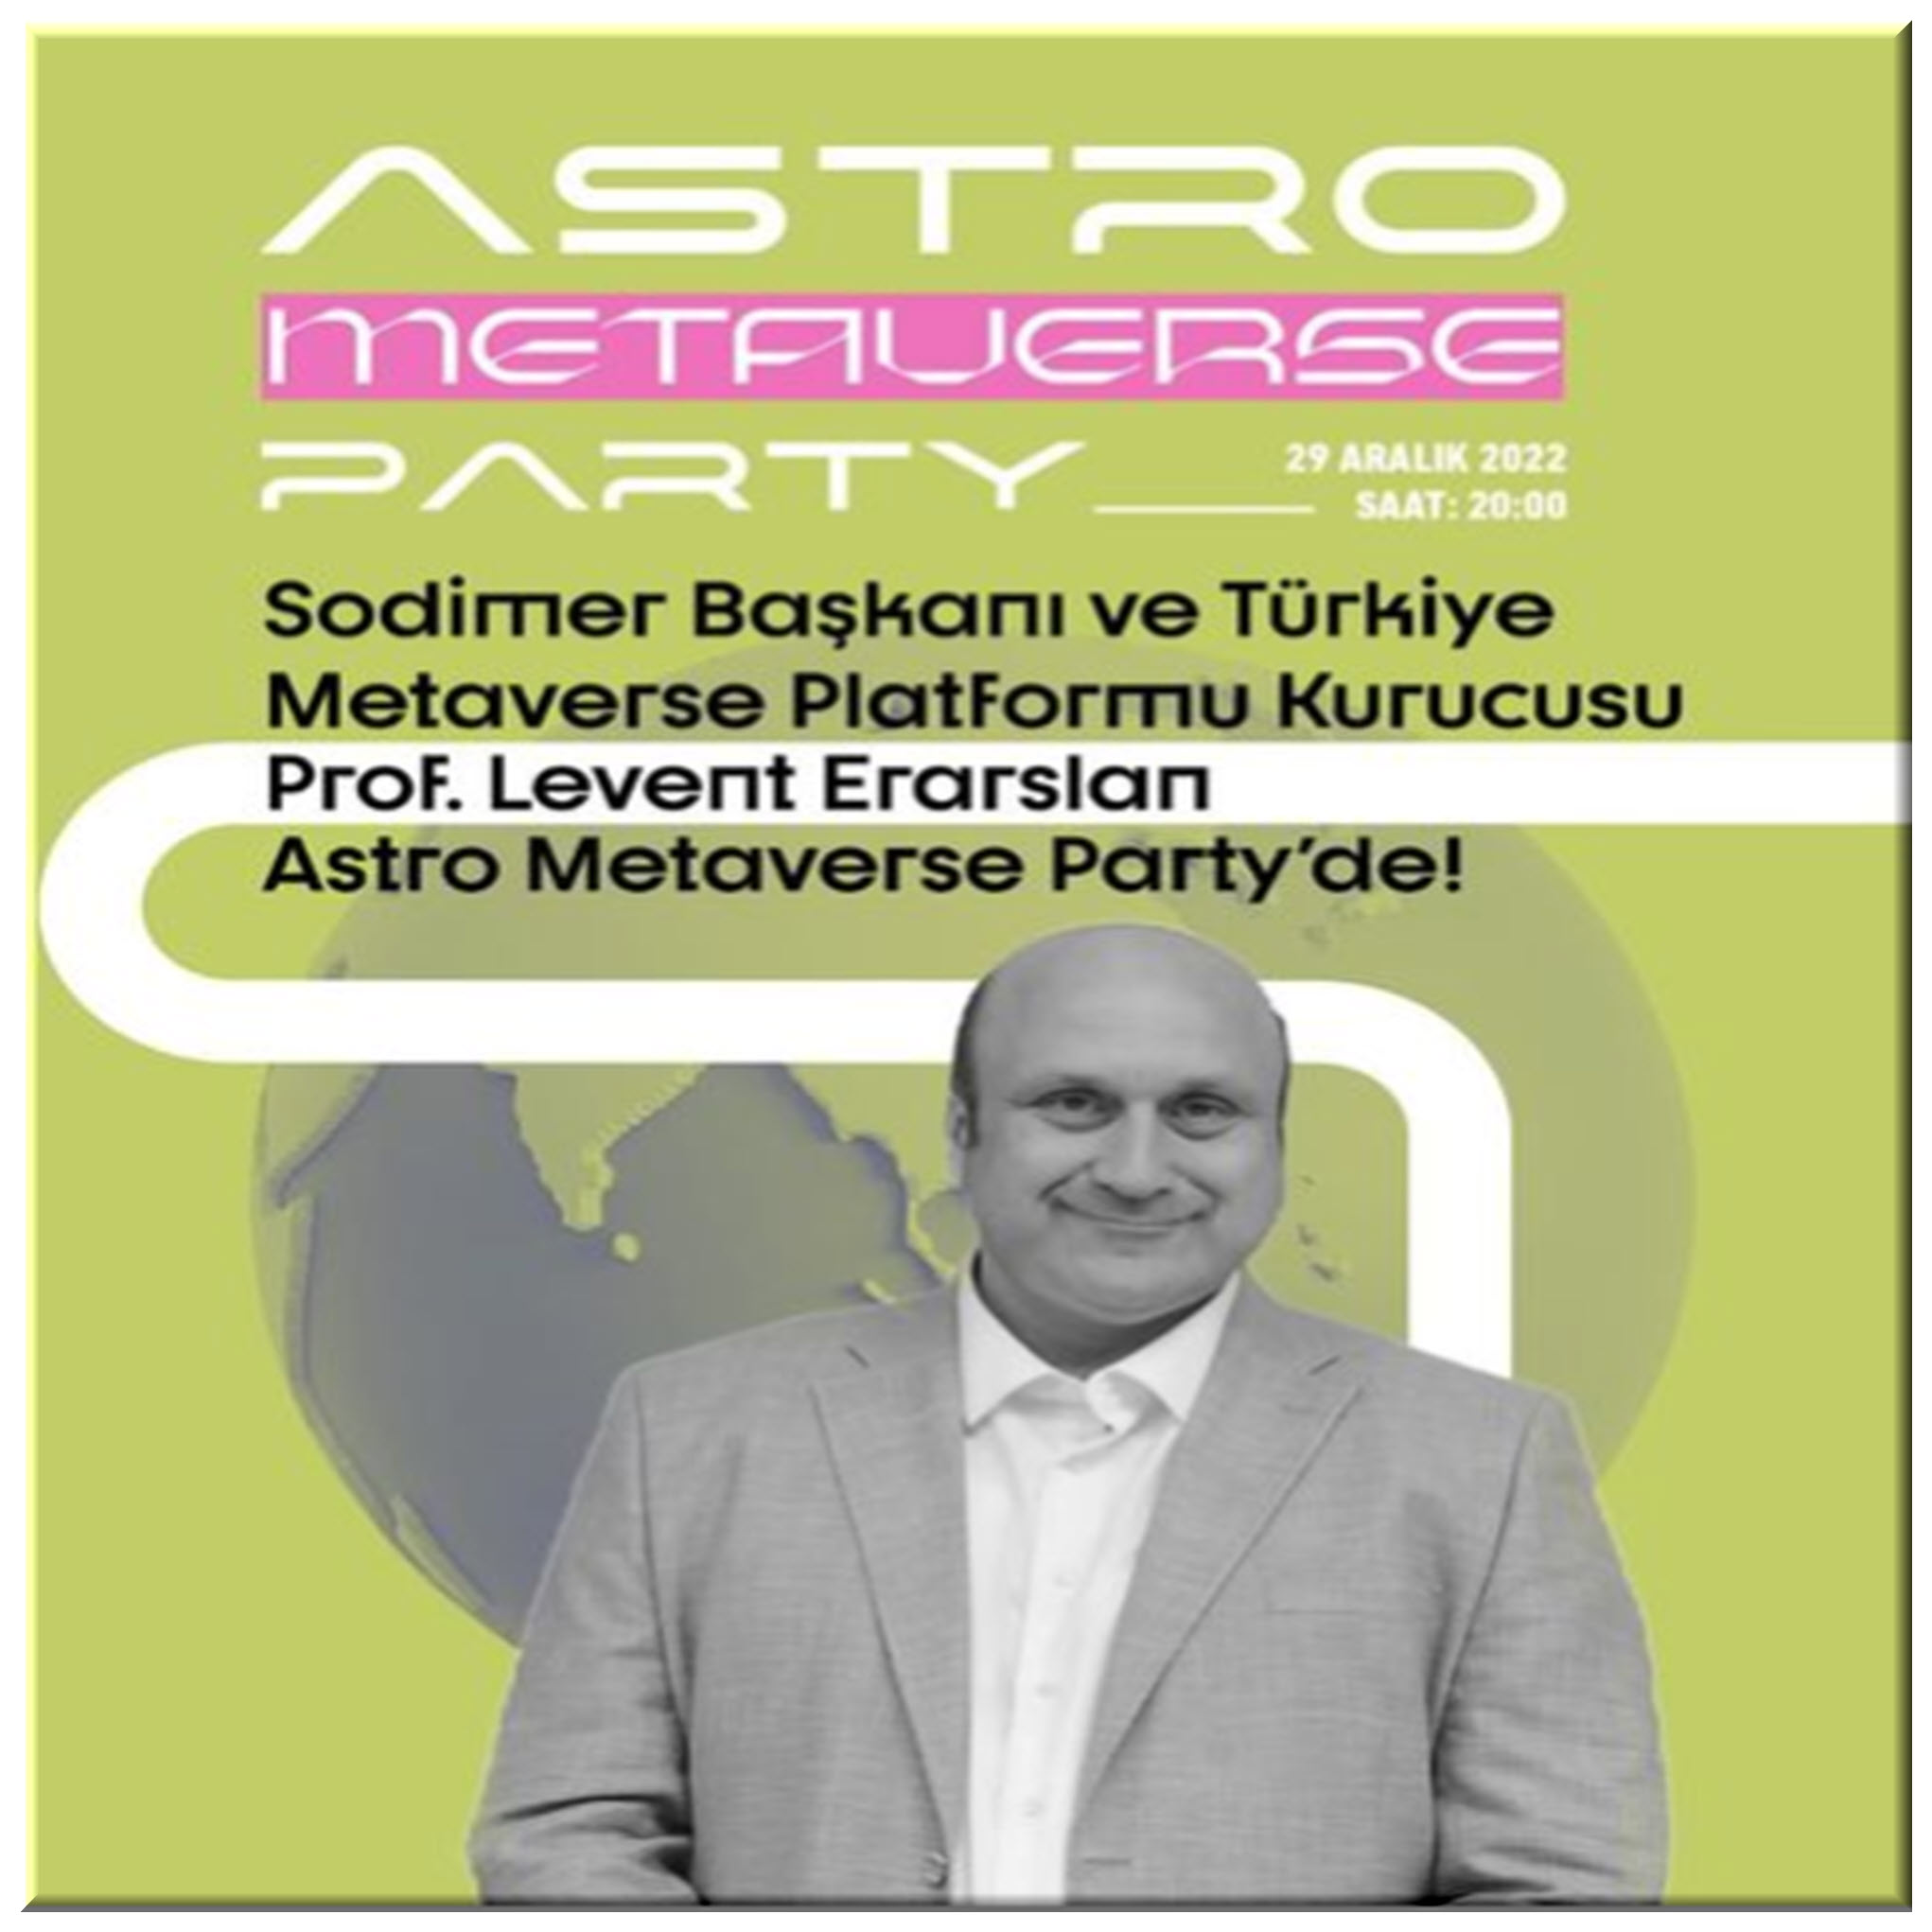 Astro Metaverse Party